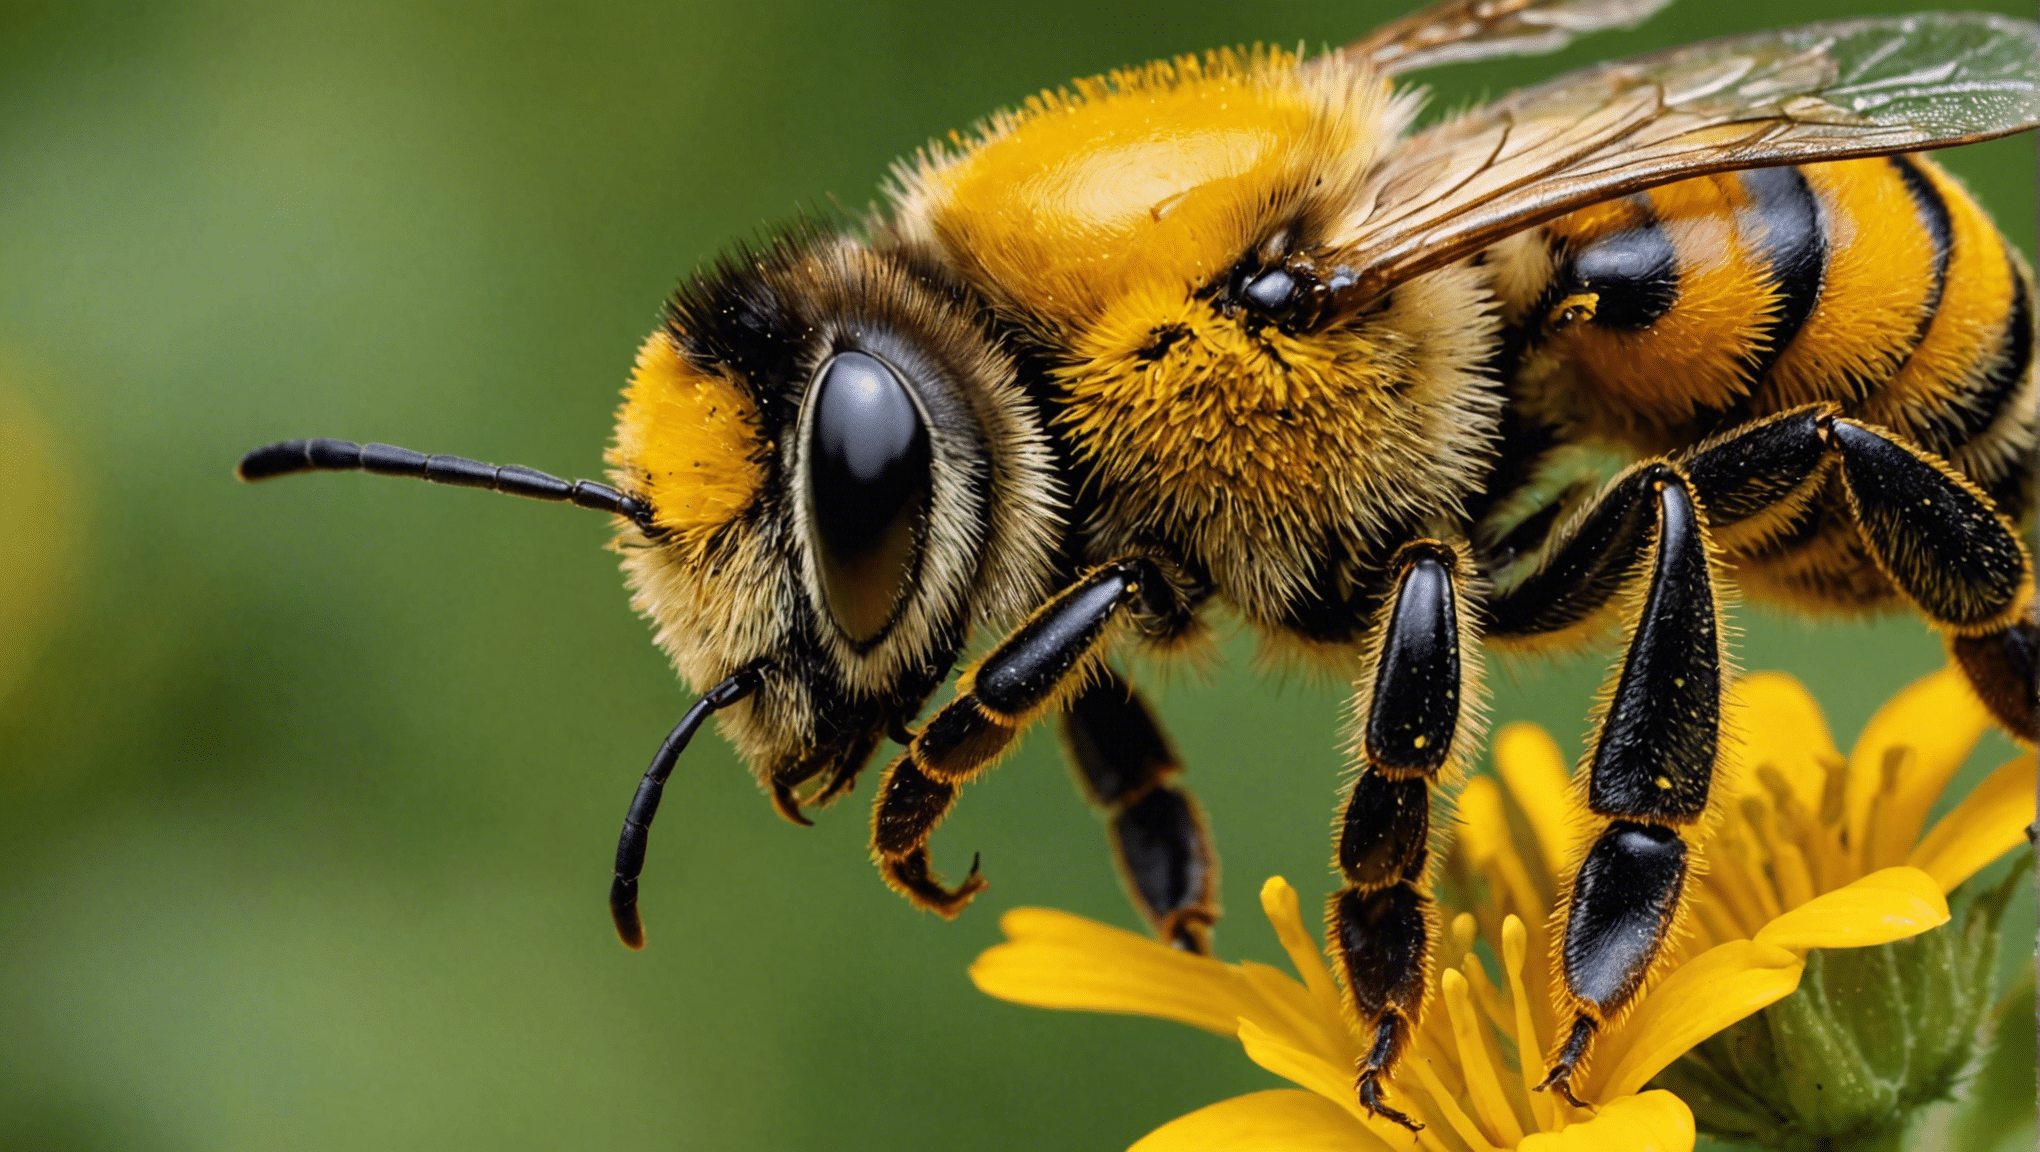 découvrez pourquoi l'abeille joue un rôle essentiel en tant que gardienne de la diversité végétale et en quoi elle est indispensable à notre écosystème.